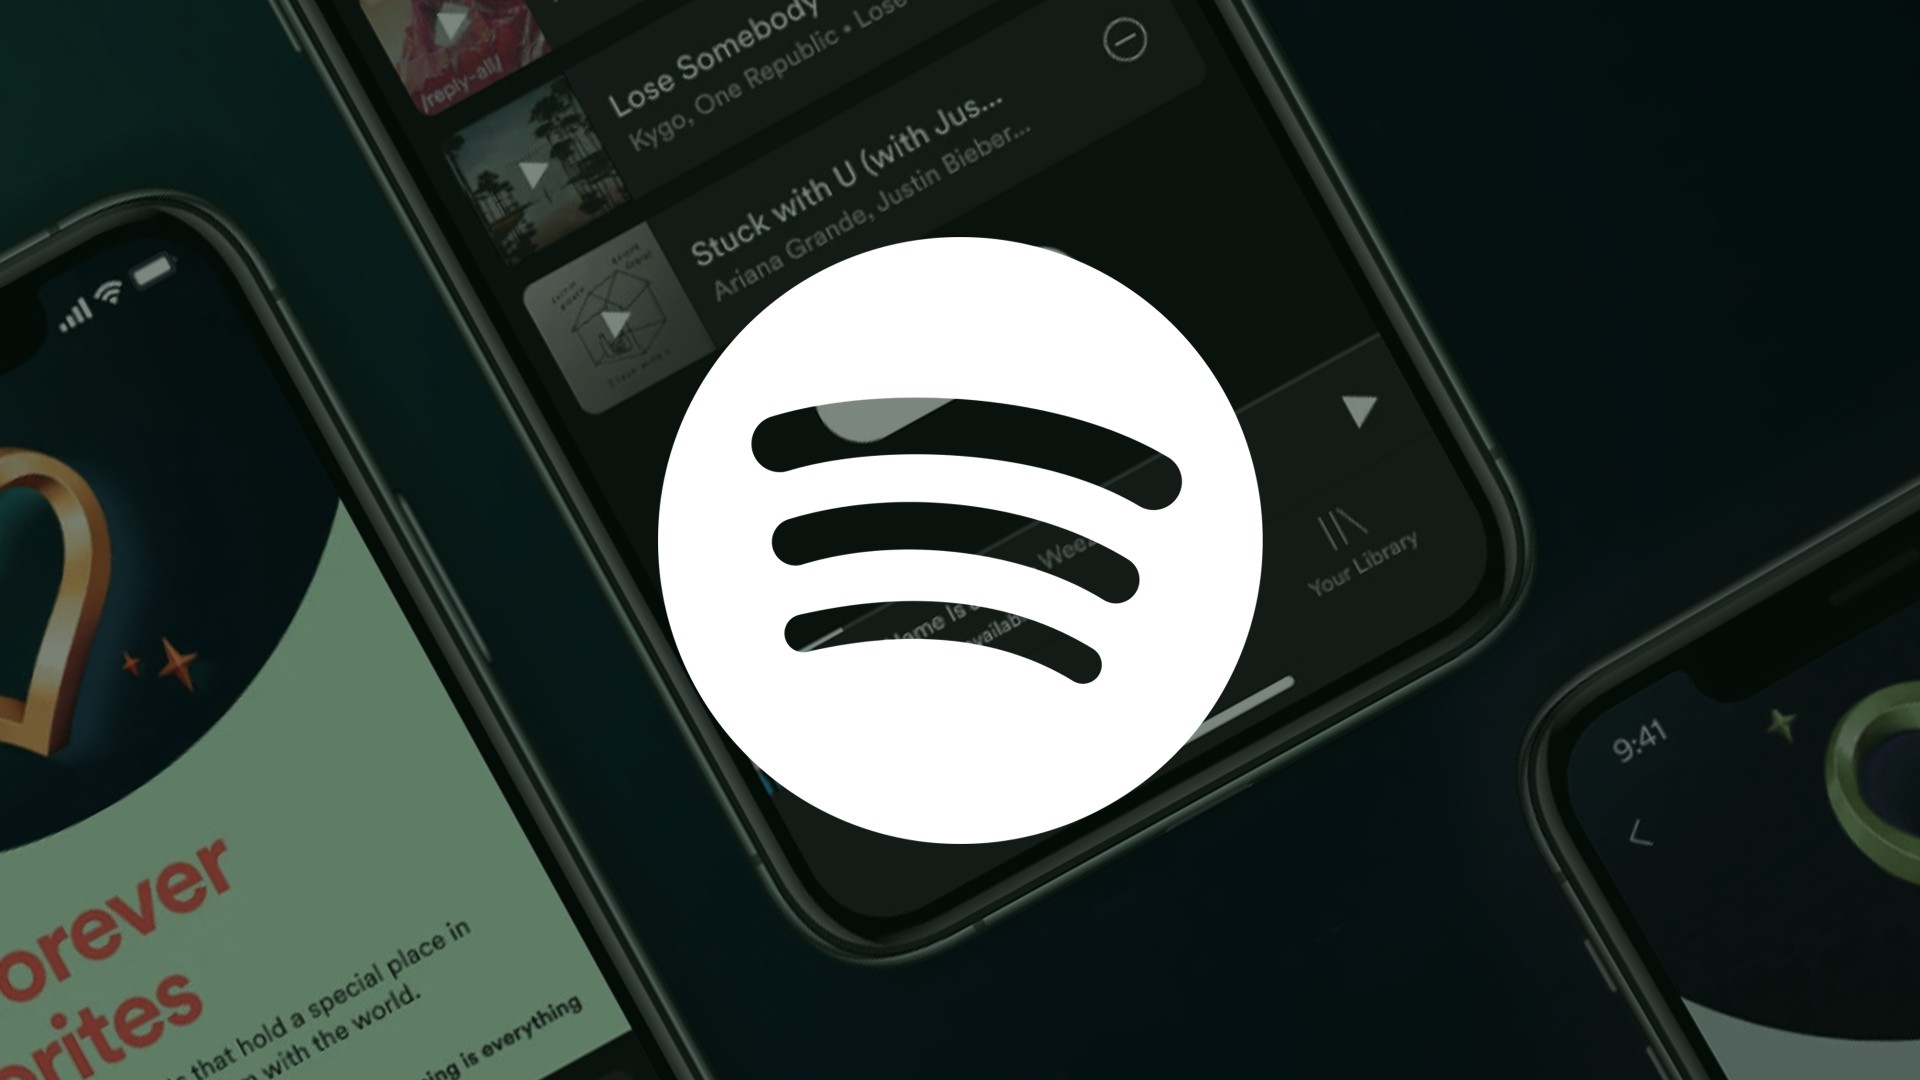 Já descobriu o jogo secreto que o Spotify tem na sua app?